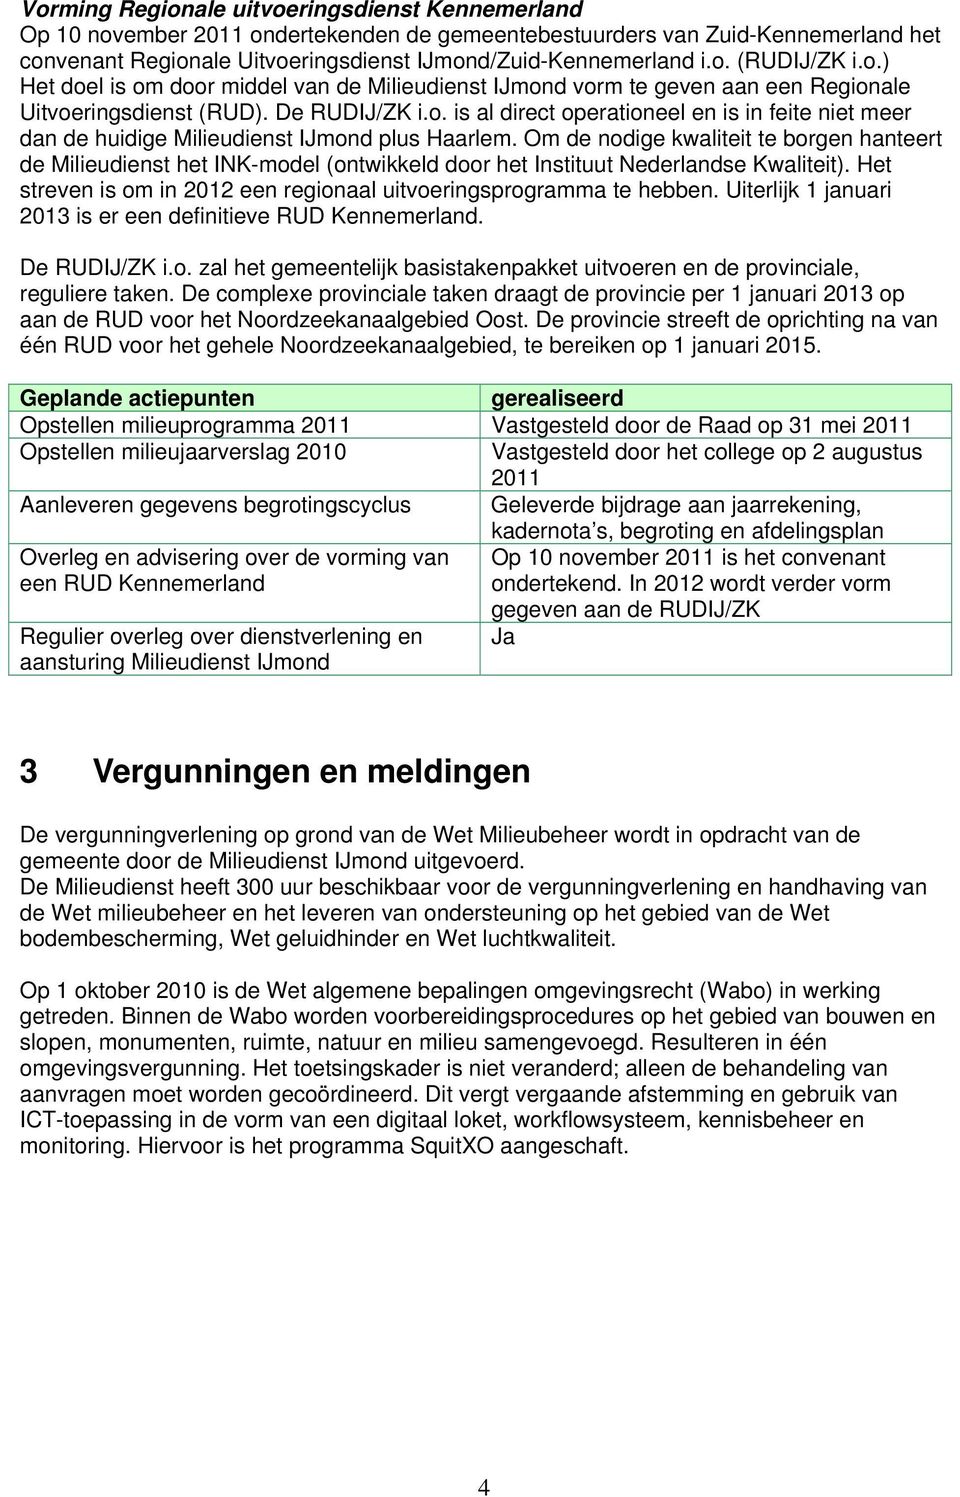 Om de nodige kwaliteit te borgen hanteert de Milieudienst het INK-model (ontwikkeld door het Instituut Nederlandse Kwaliteit). Het streven is om in 2012 een regionaal uitvoeringsprogramma te hebben.